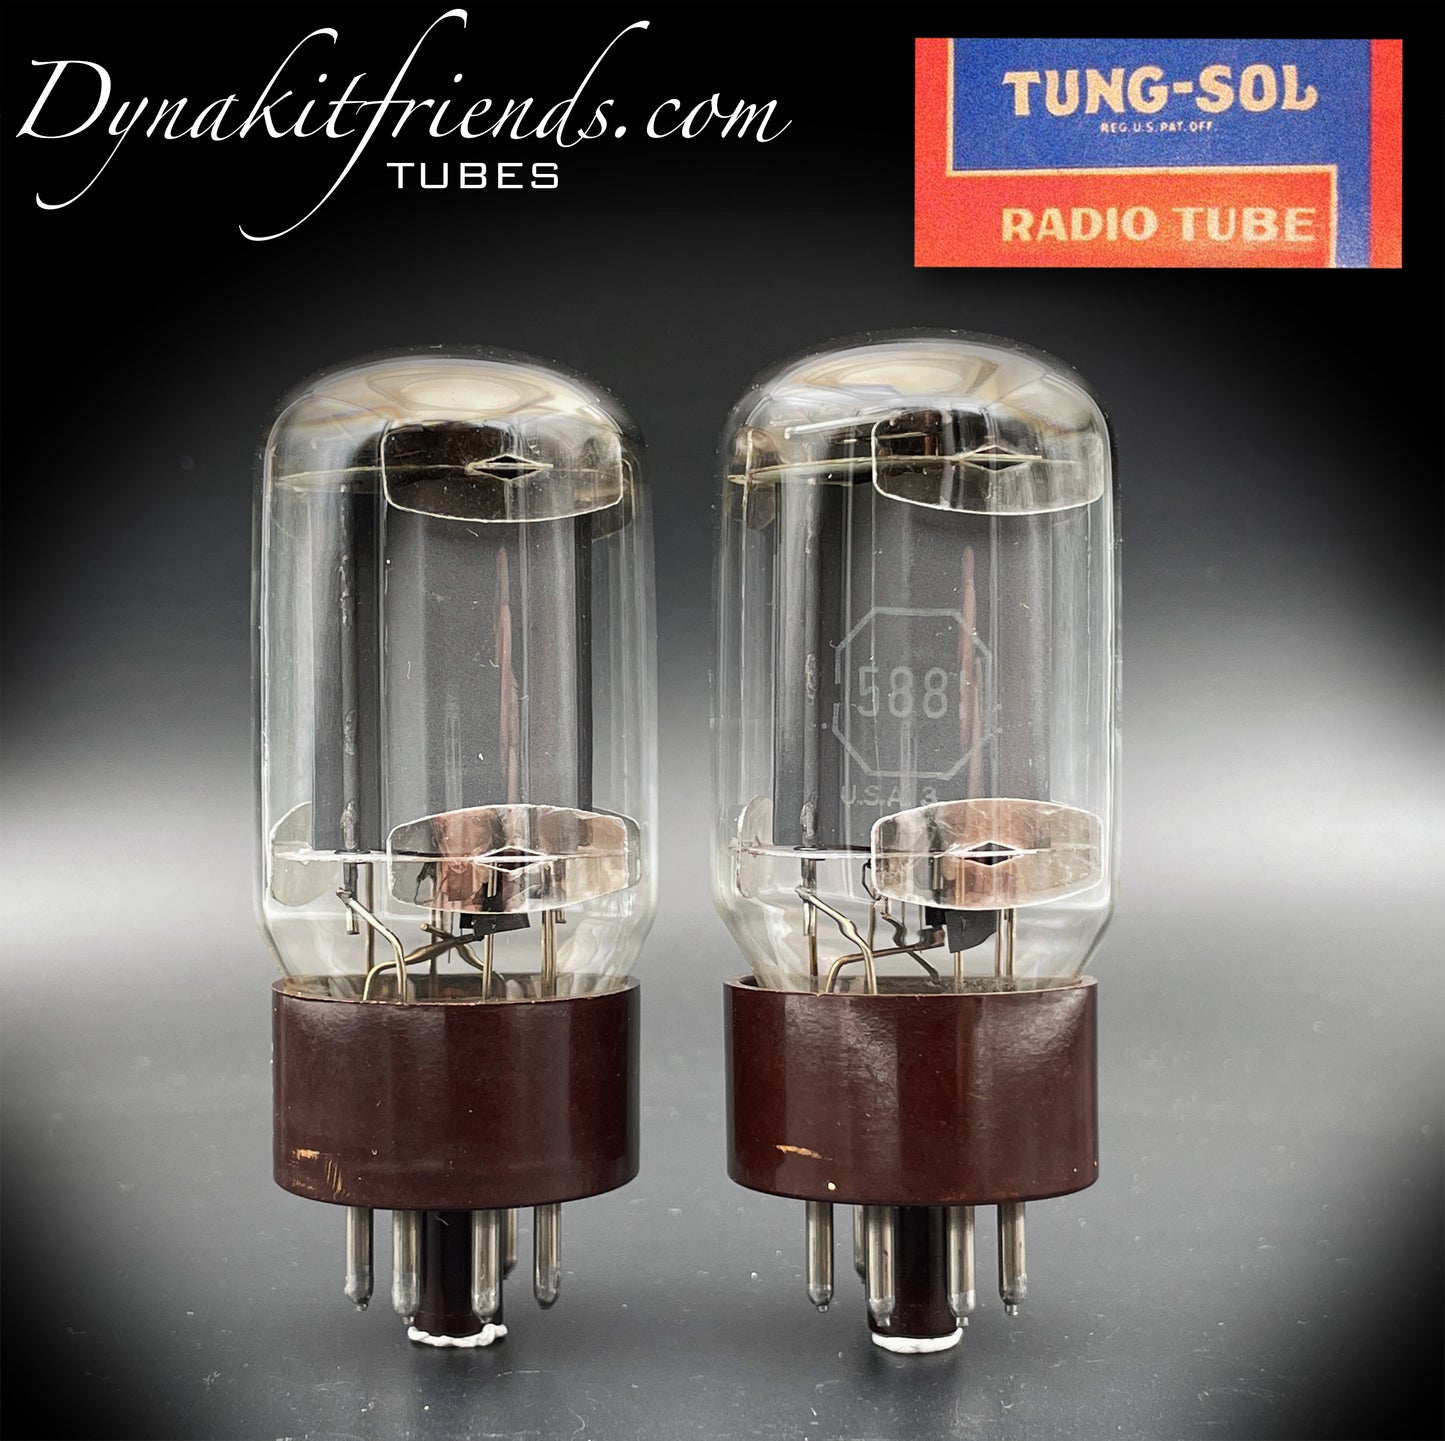 5881 (6L6WGB) TUNG-SOL passendes Paar Vakuumröhren mit braunem Sockel, hergestellt in den USA